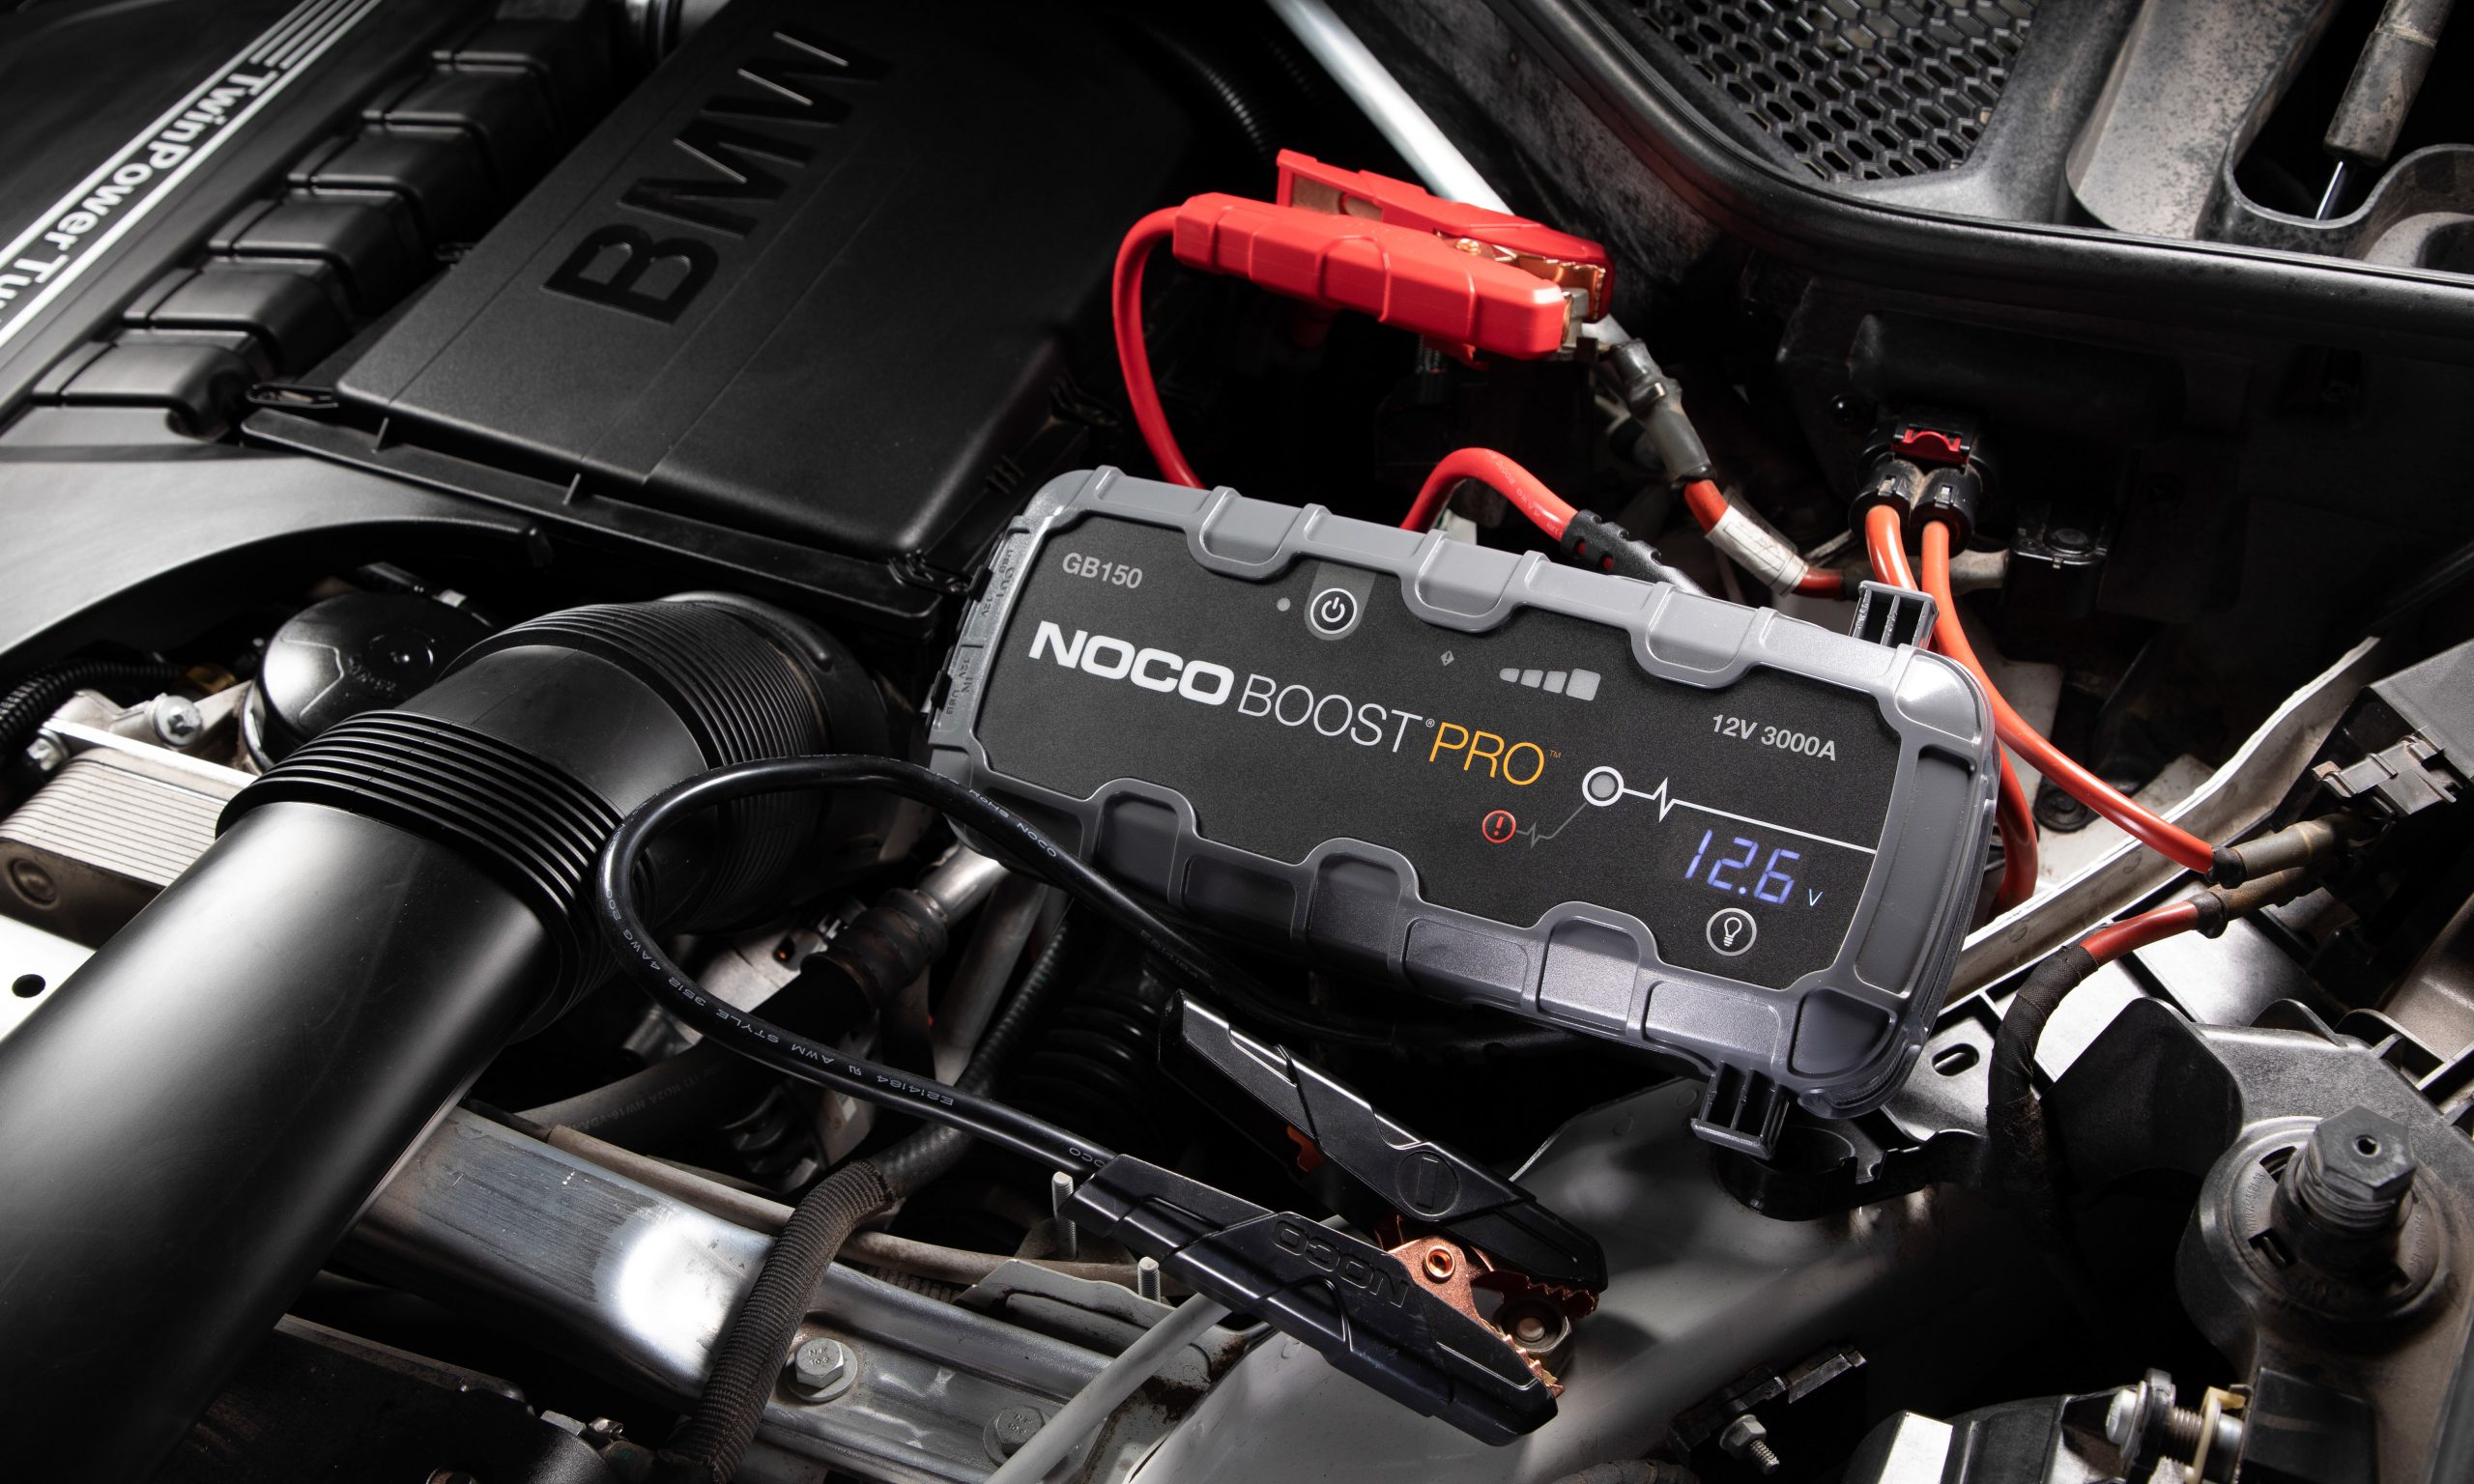 Produkt des Monats: Noco Boost Pro GB150 – Strom für den Notfall